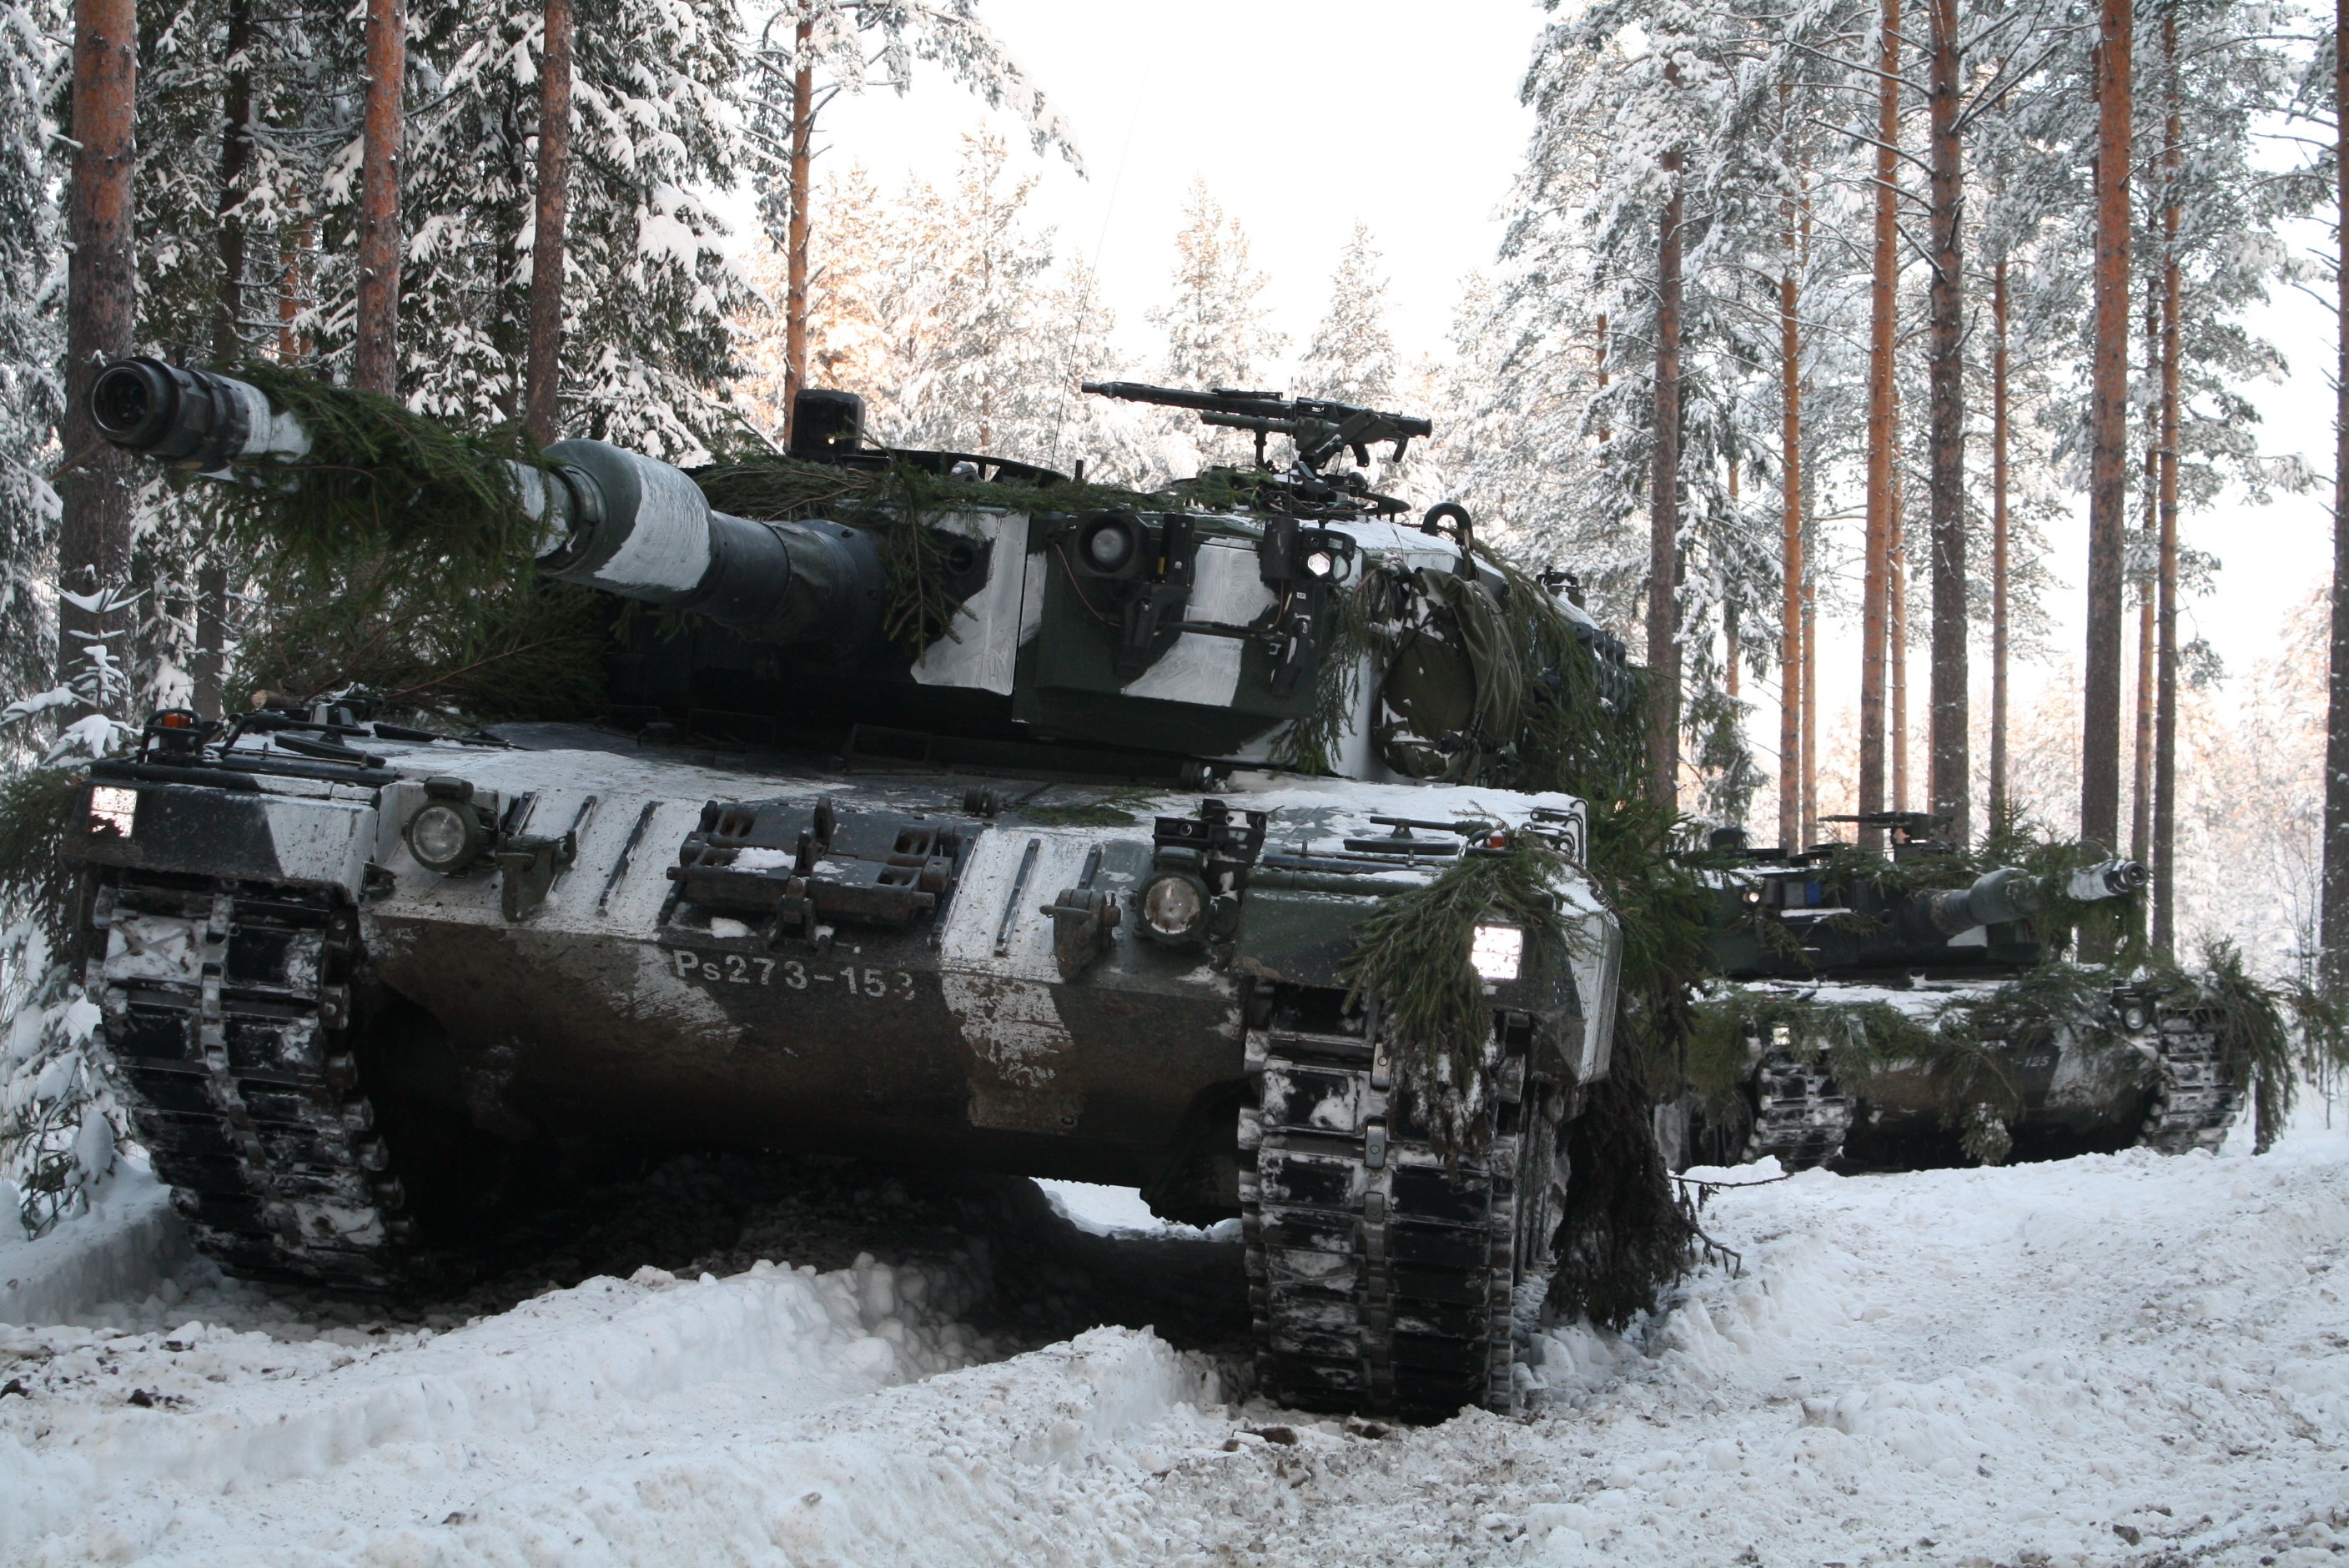 German Army Leopard 2A4 main battle tank